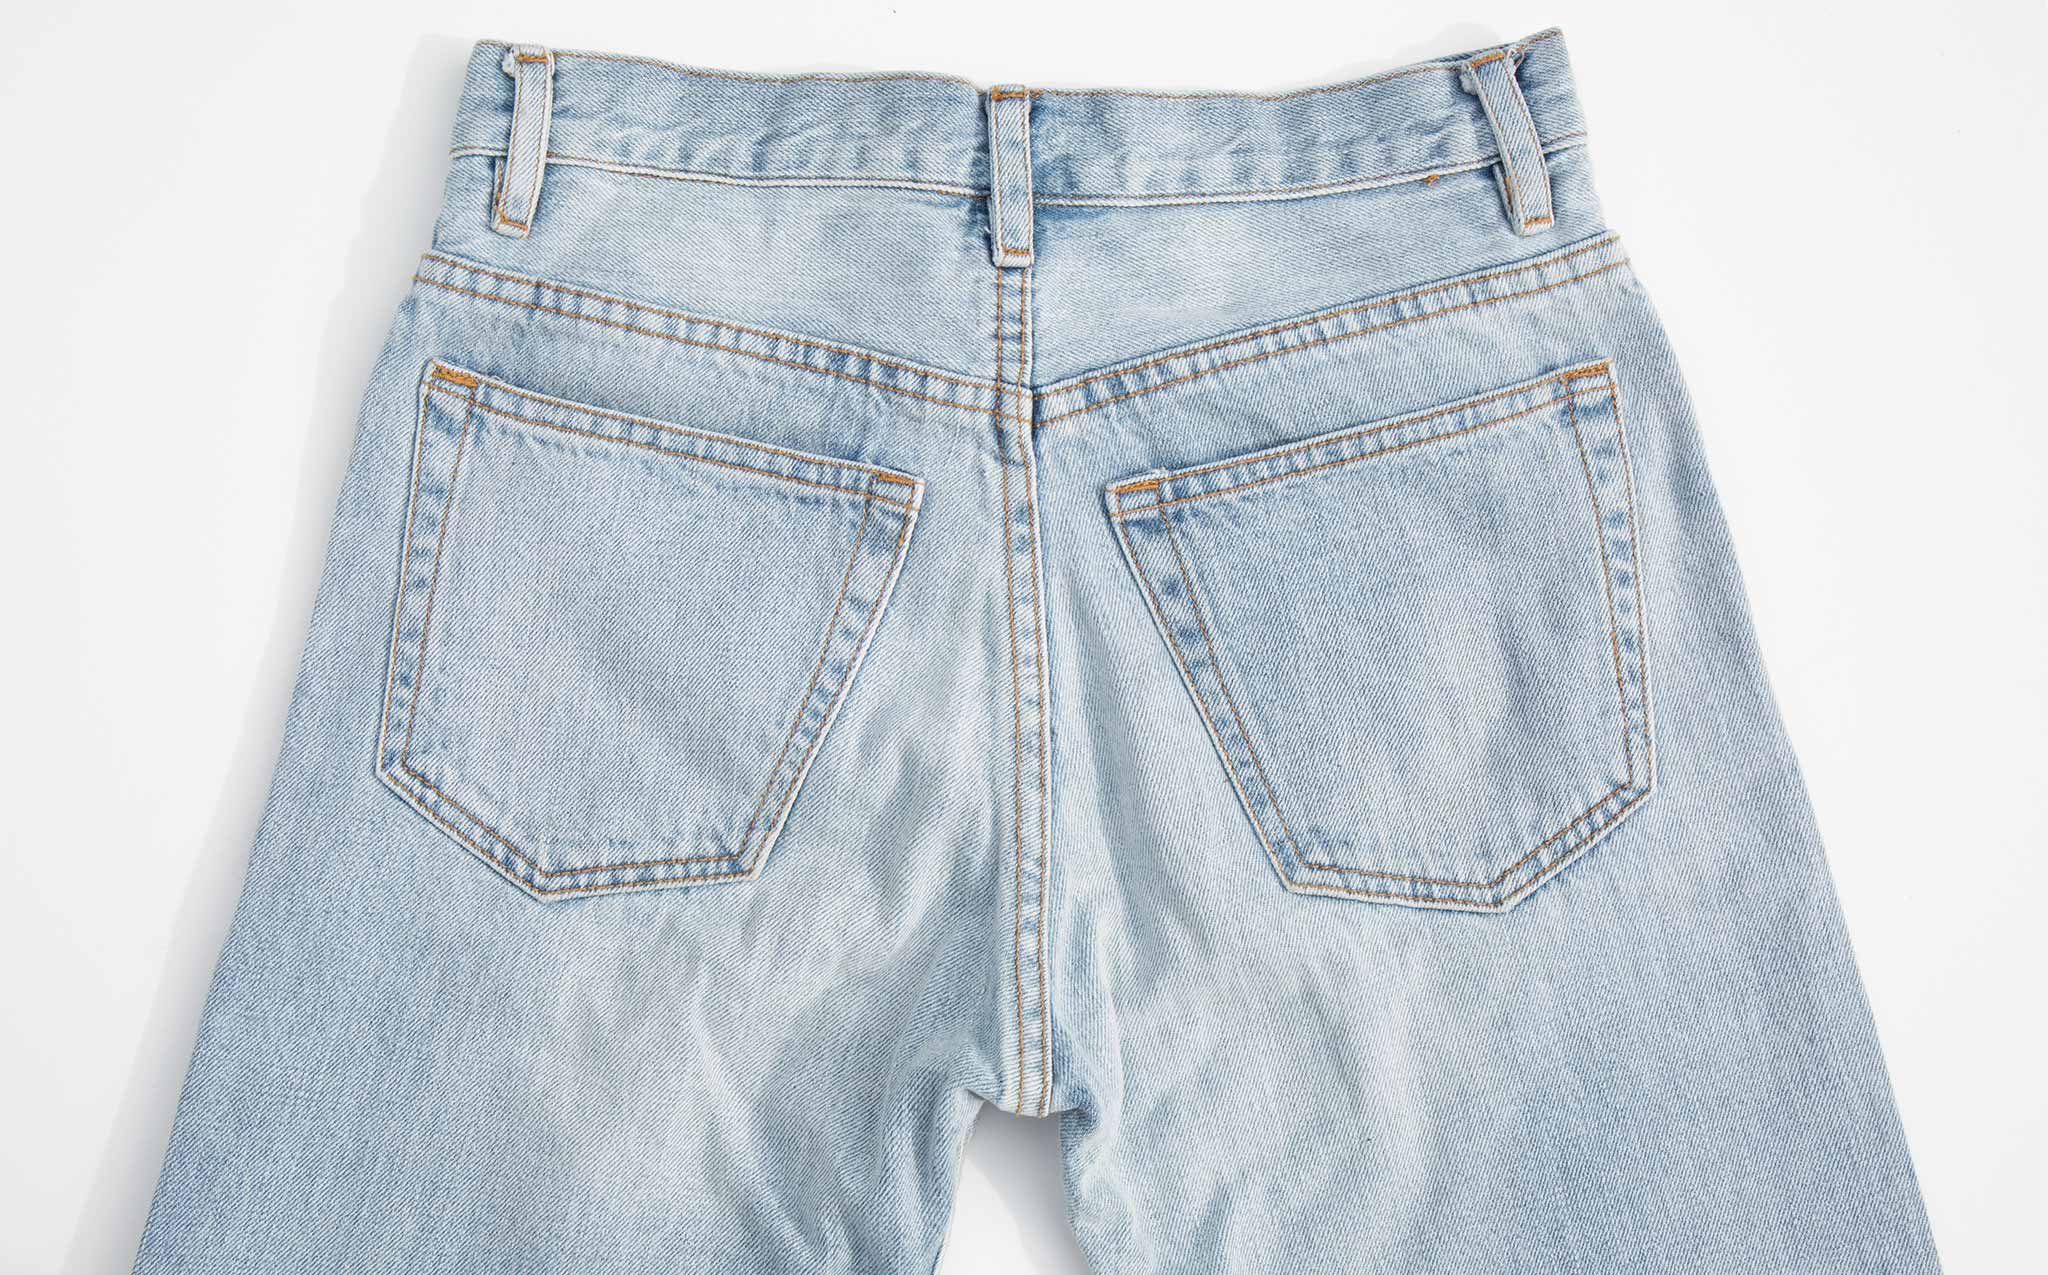 Vivien Ramsay Light Wash Standard Jean